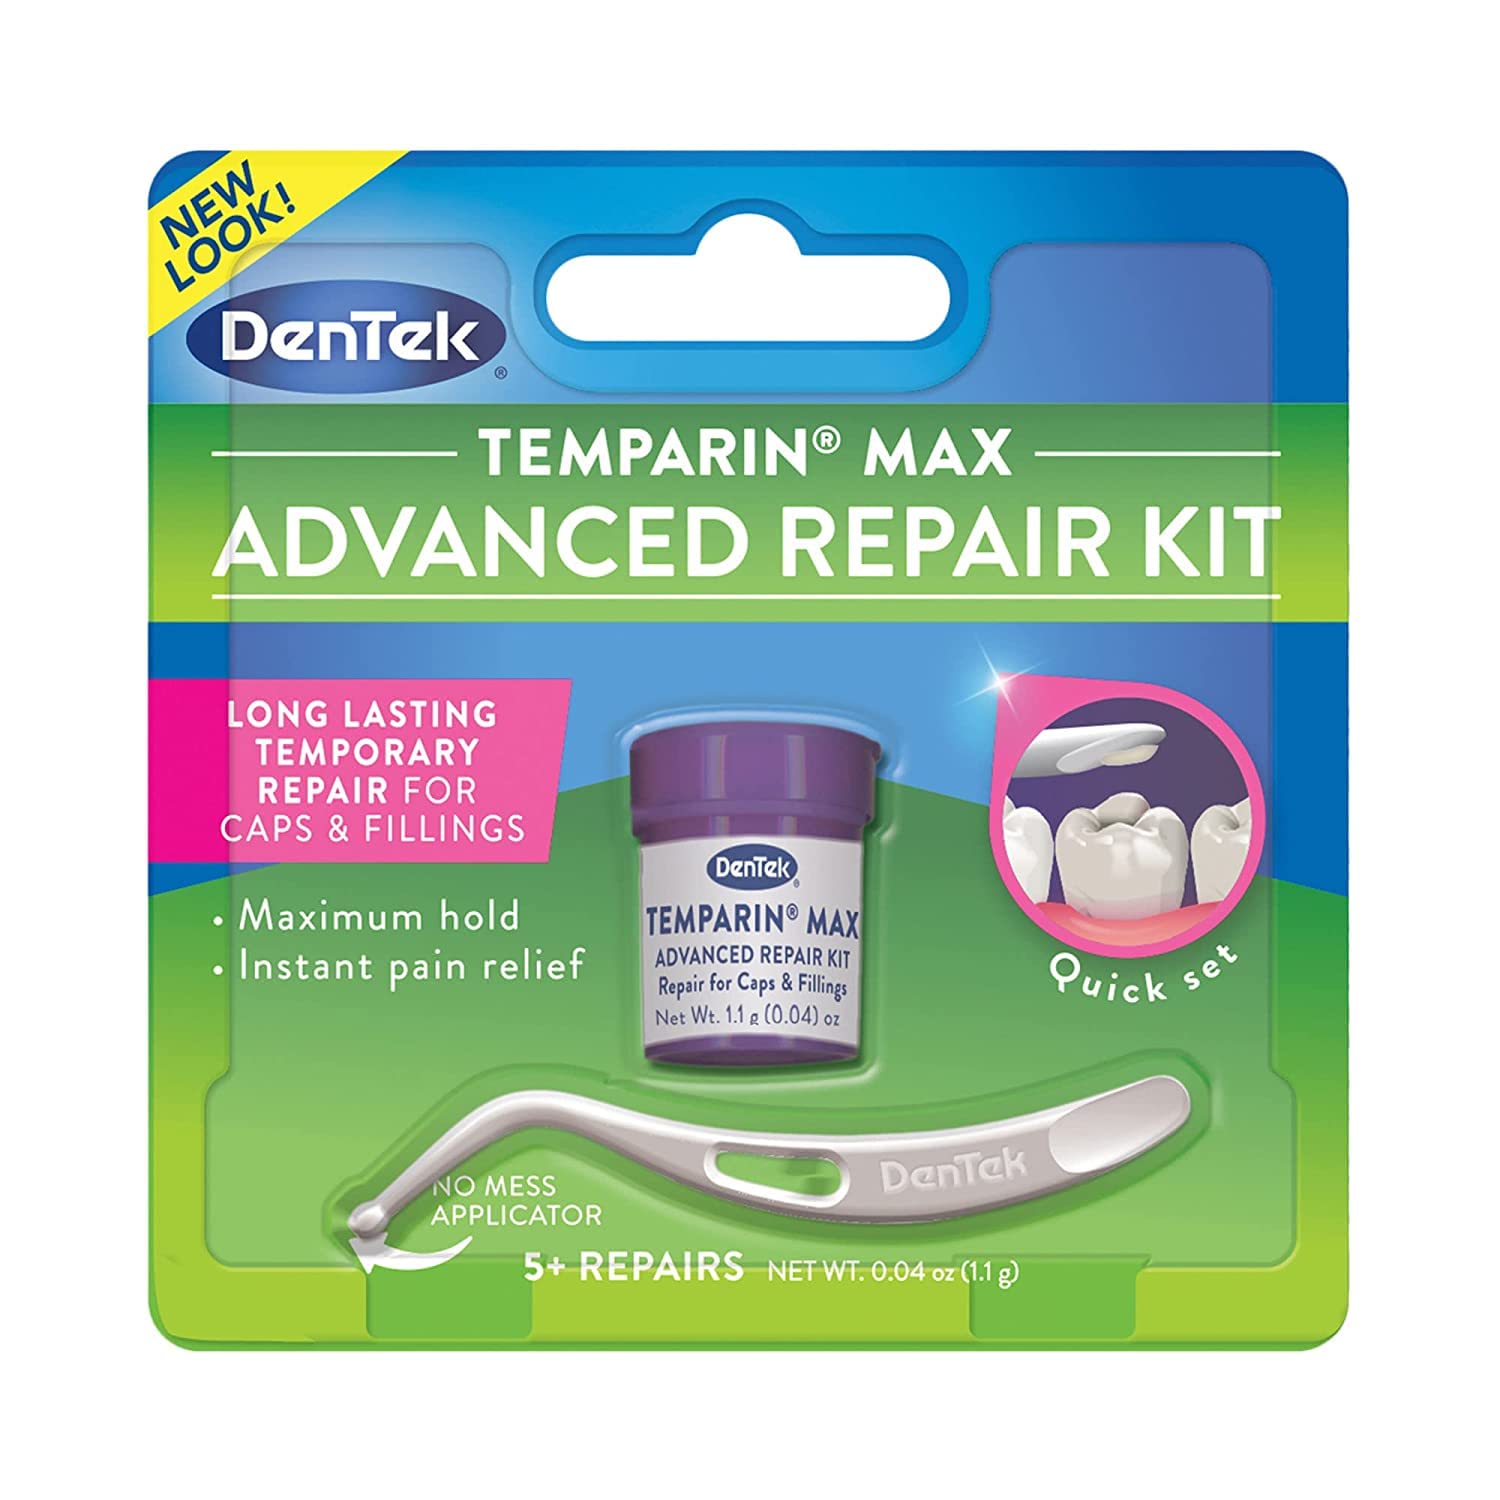 DenTek Temparin Max Advanced Dental Repair Kit, 13+ Repairs $2.38 w/ S&S